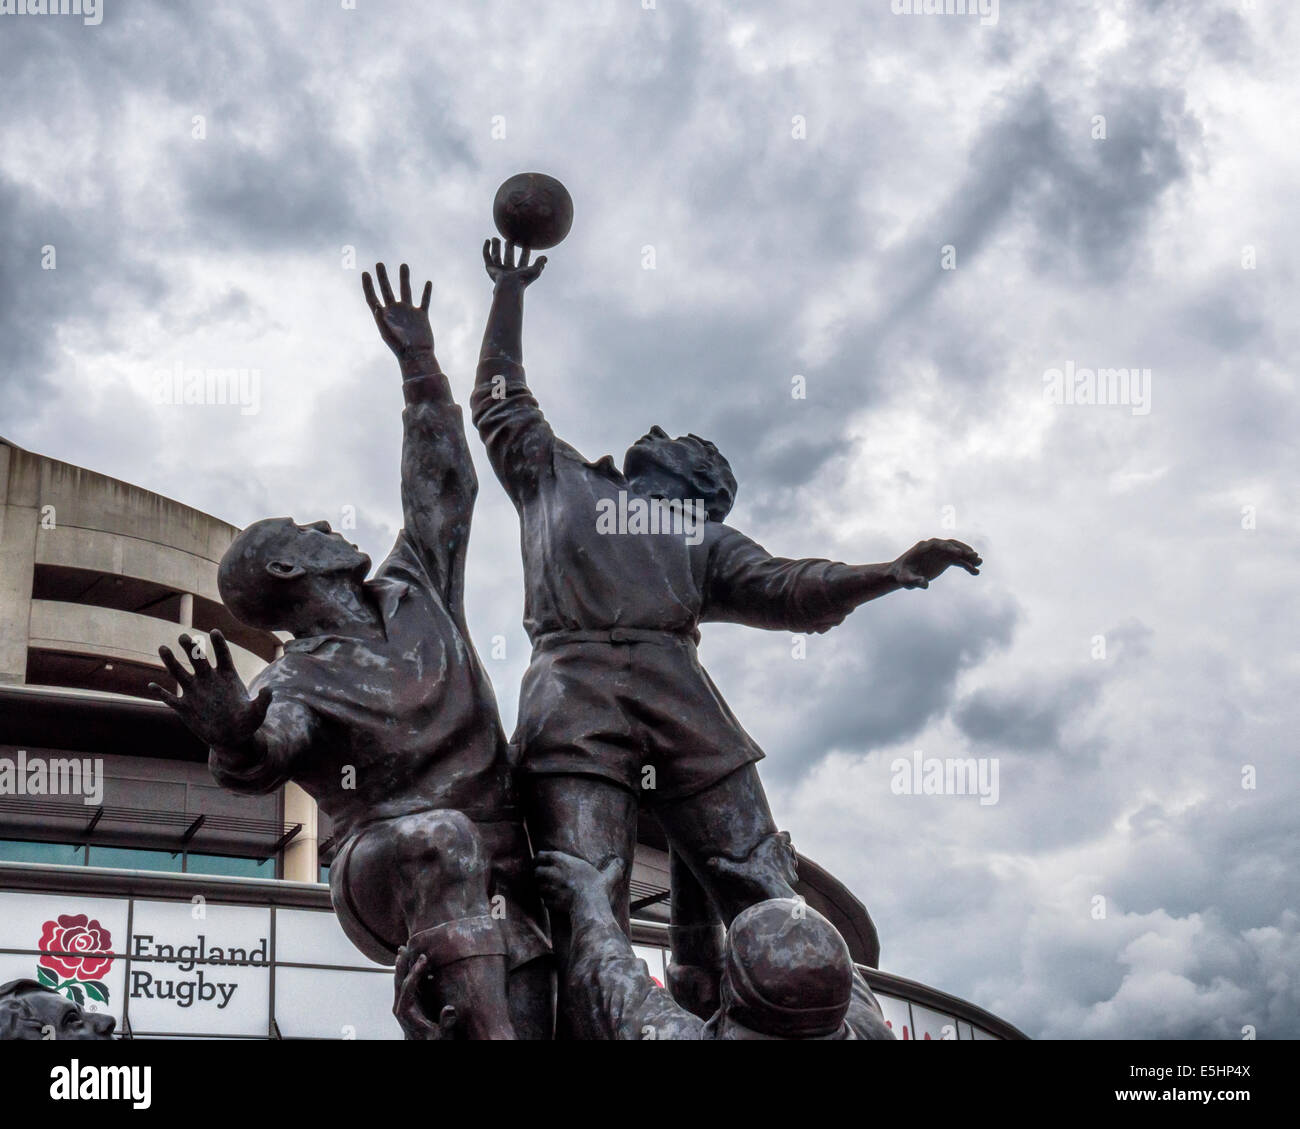 Il Twickenham Rugby Stadium e la scultura in bronzo di giocatori di rugby saltando in un pallone da rugby, London, England, Regno Unito Foto Stock